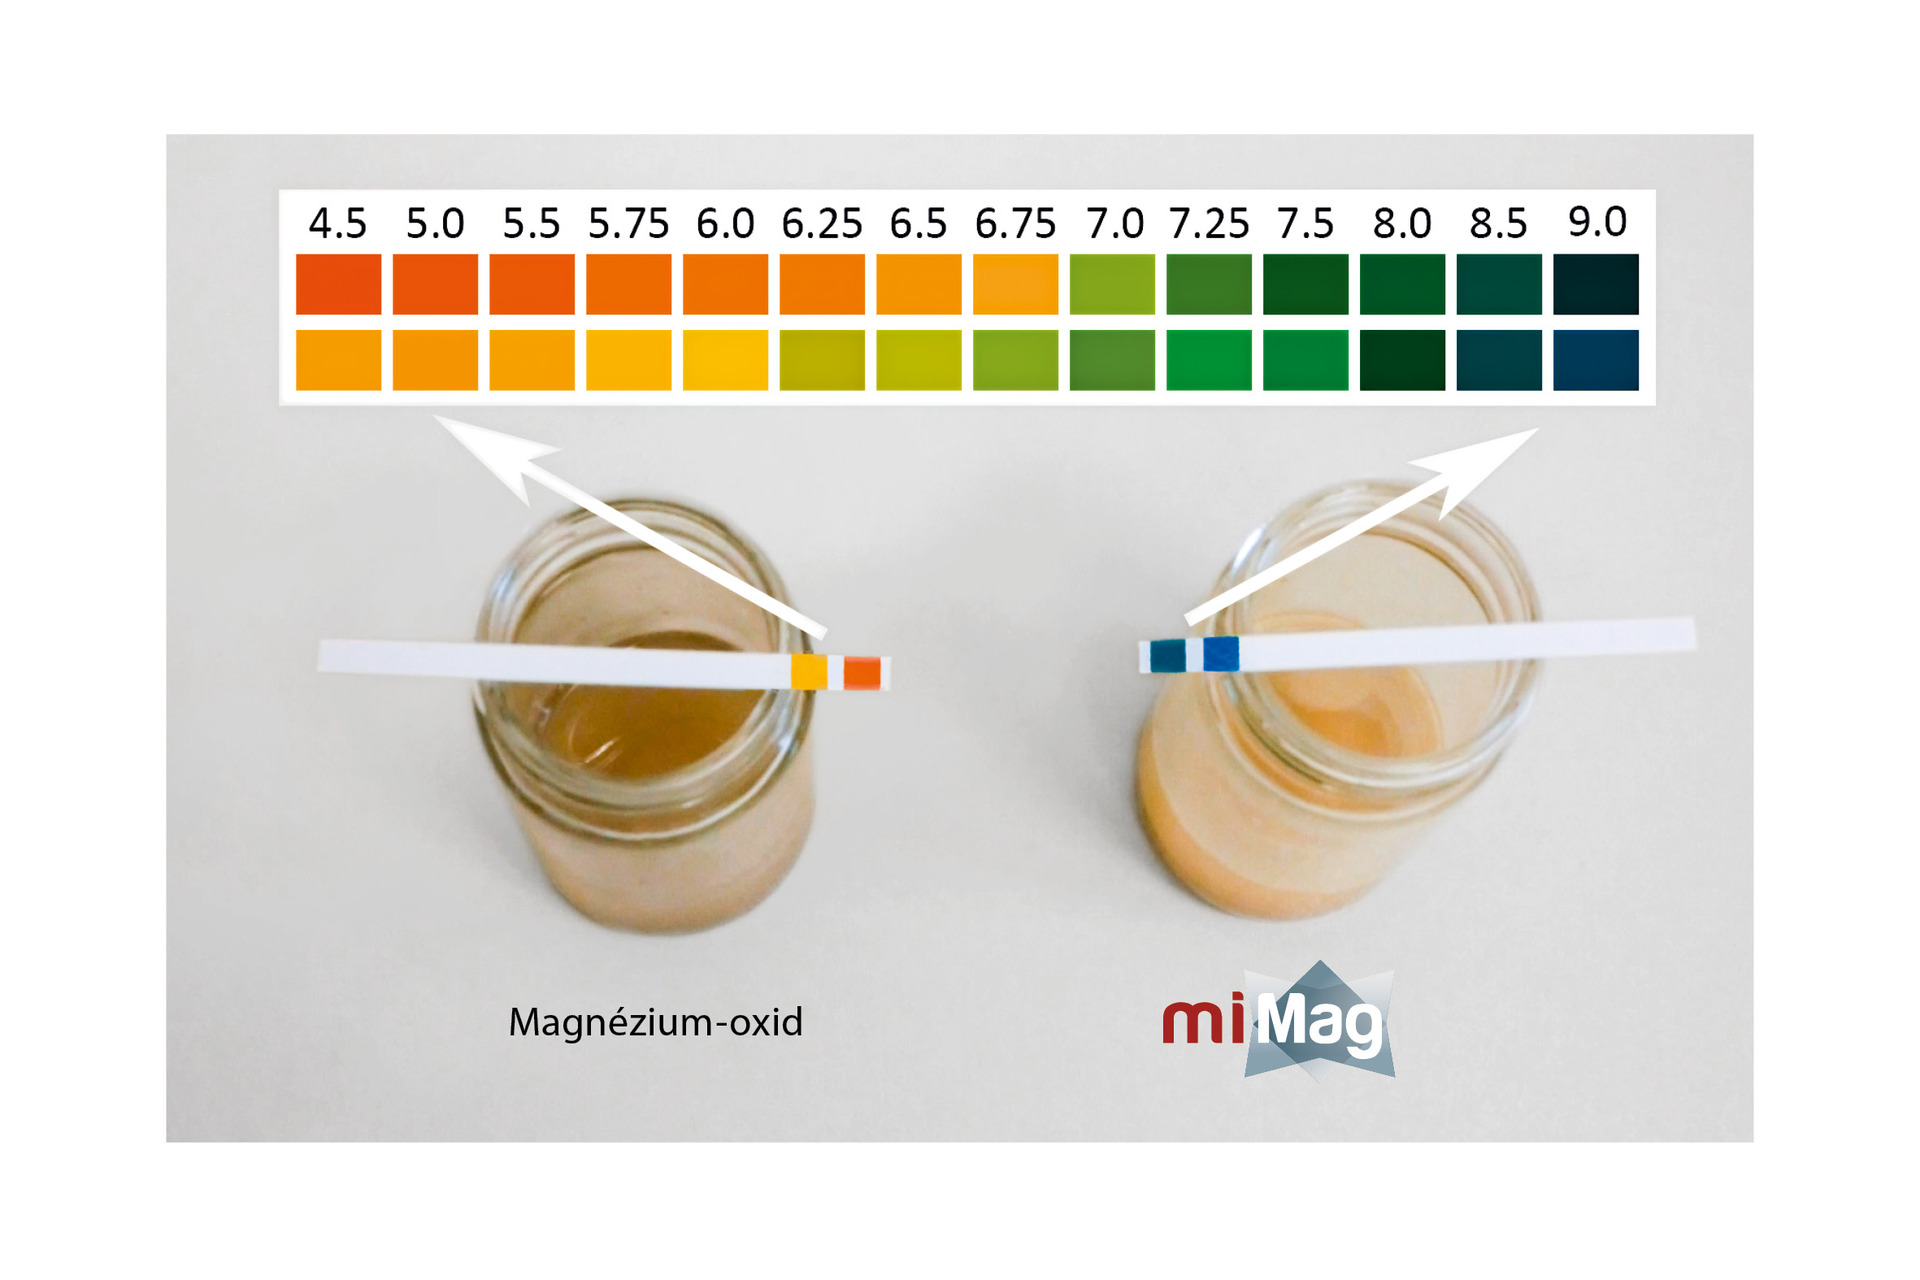 A hagyományos magnézium-oxid és a MiMag ecetsavas oldata kémhatásának összehasonlítása 